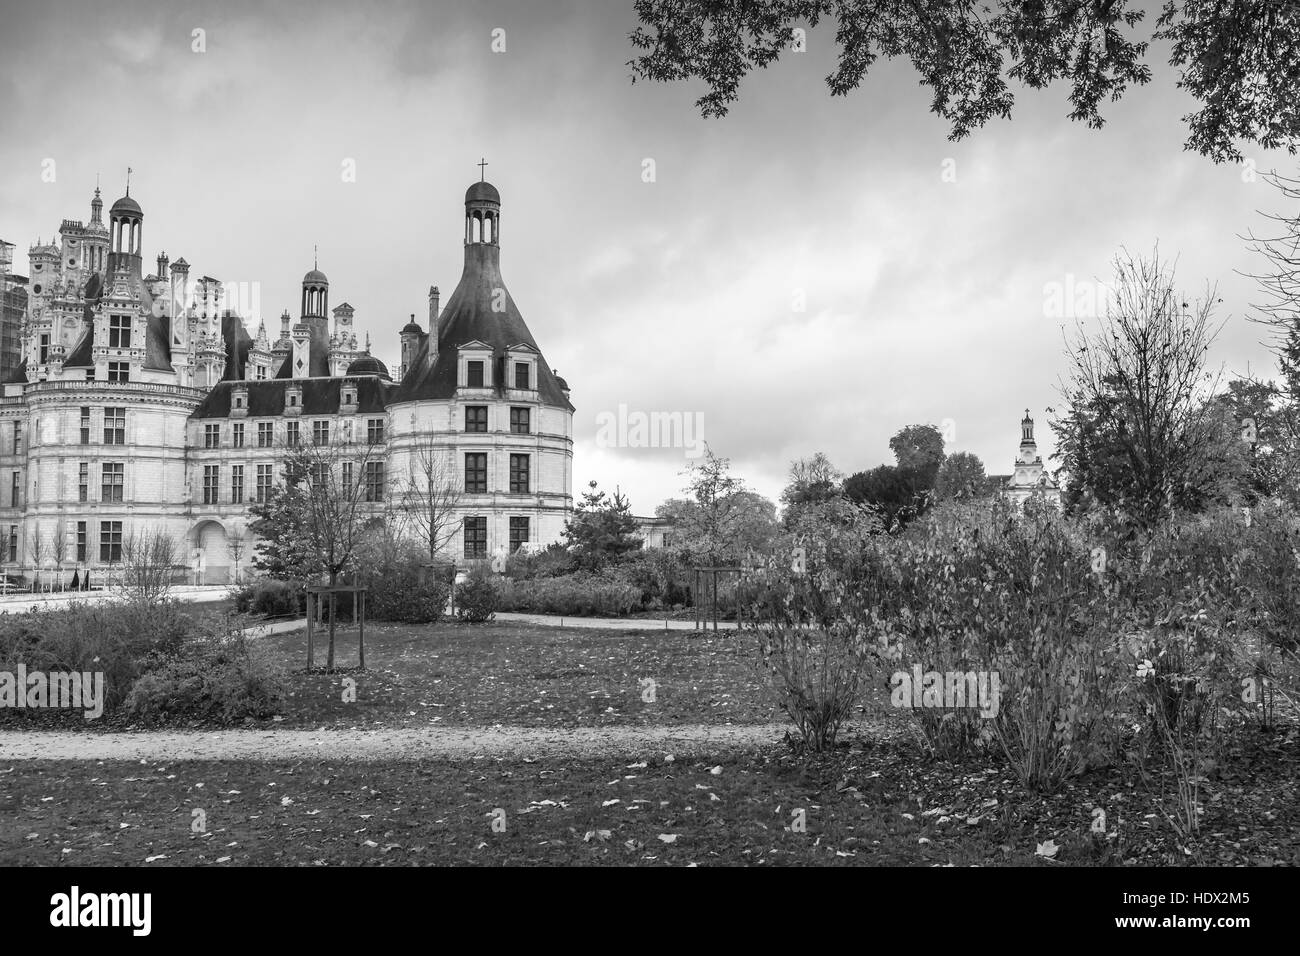 Chambord, Francia - 6 Novembre 2016: Chateau de Chambord, il castello medievale, la Valle della Loira. Francese di architettura rinascimentale Foto Stock